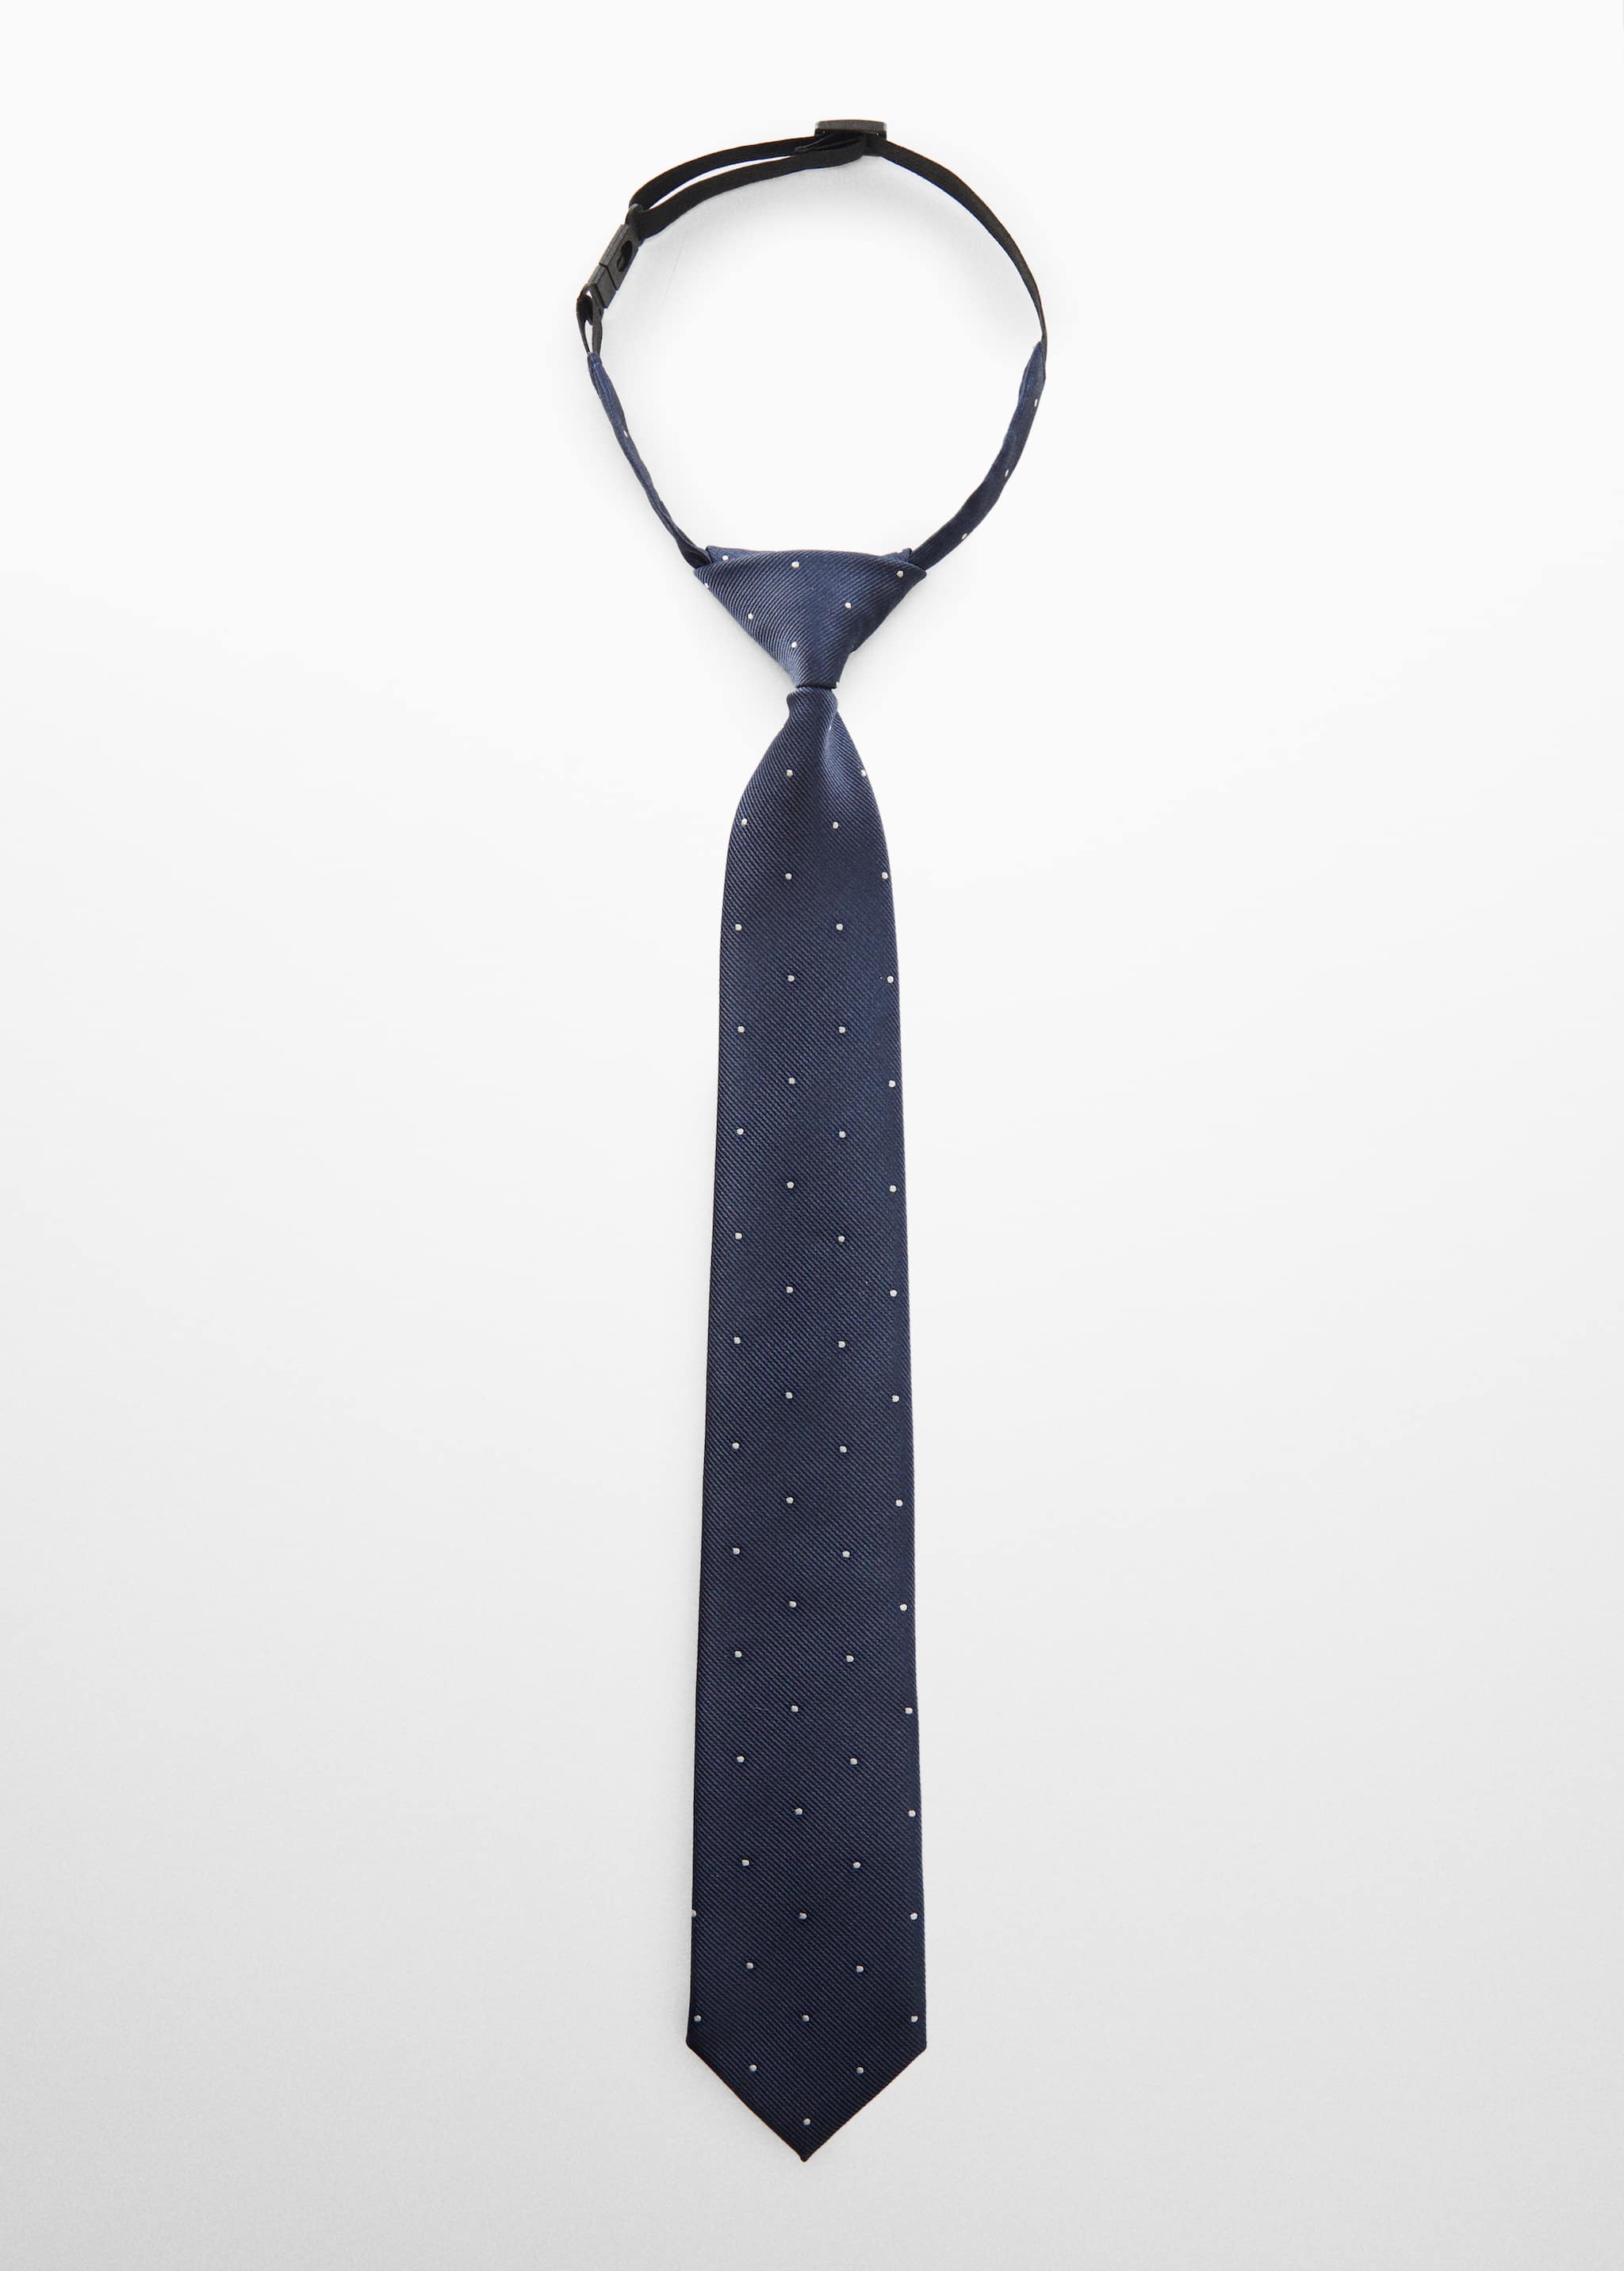 Cravate pois - Article sans modèle